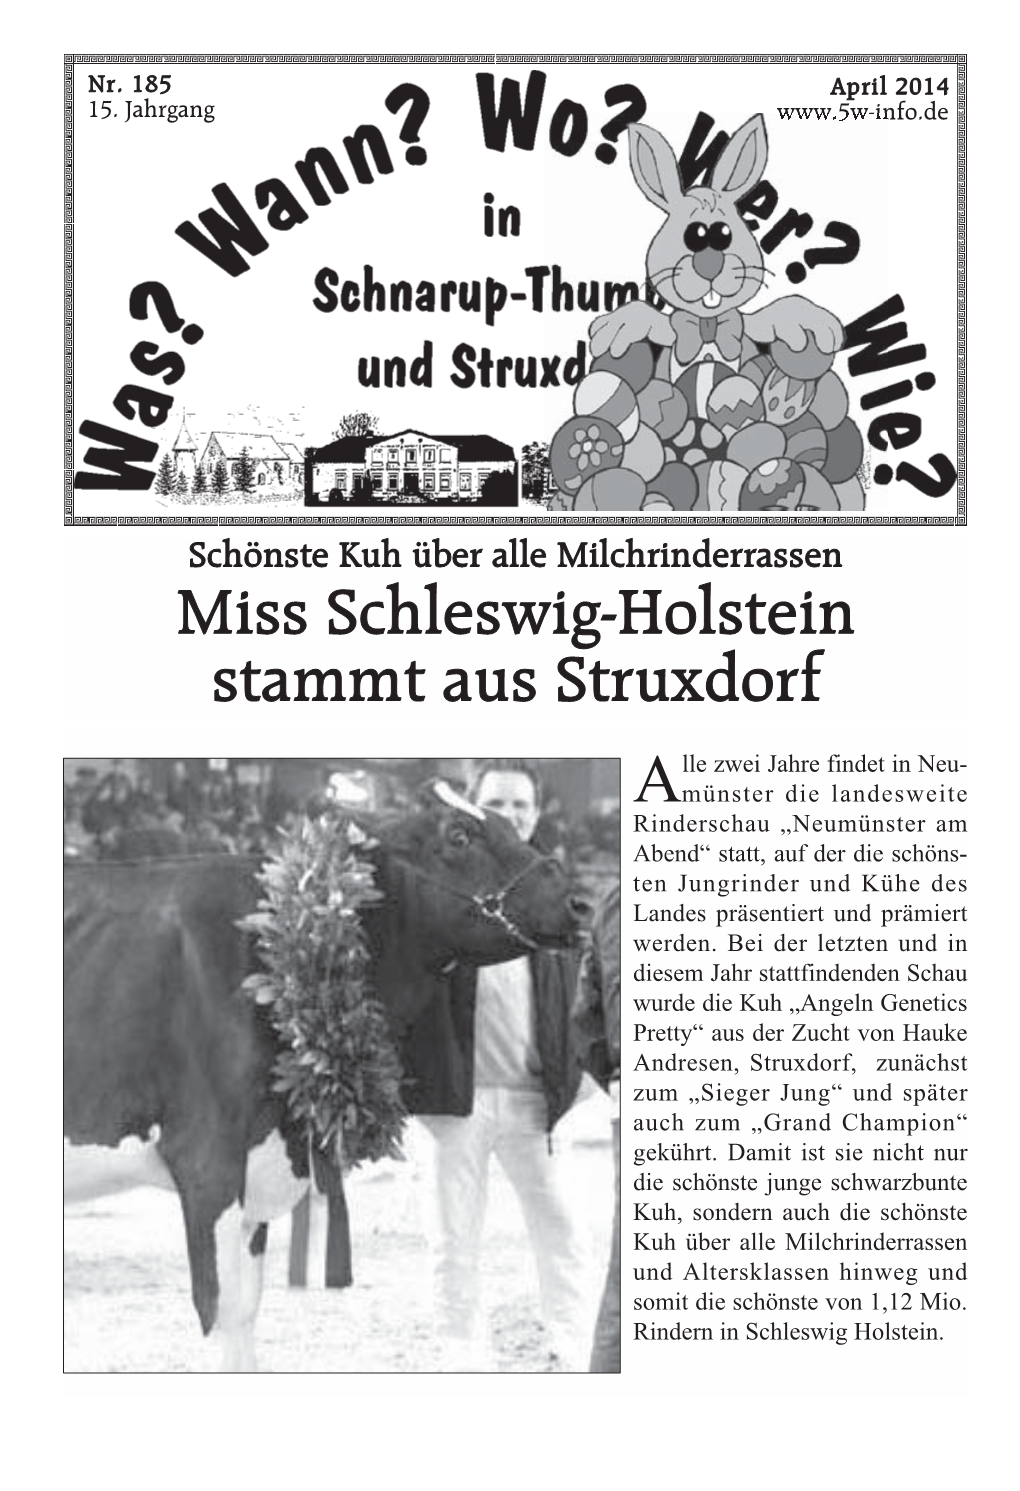 Miss Schleswig-Holstein Stammt Aus Struxdorf